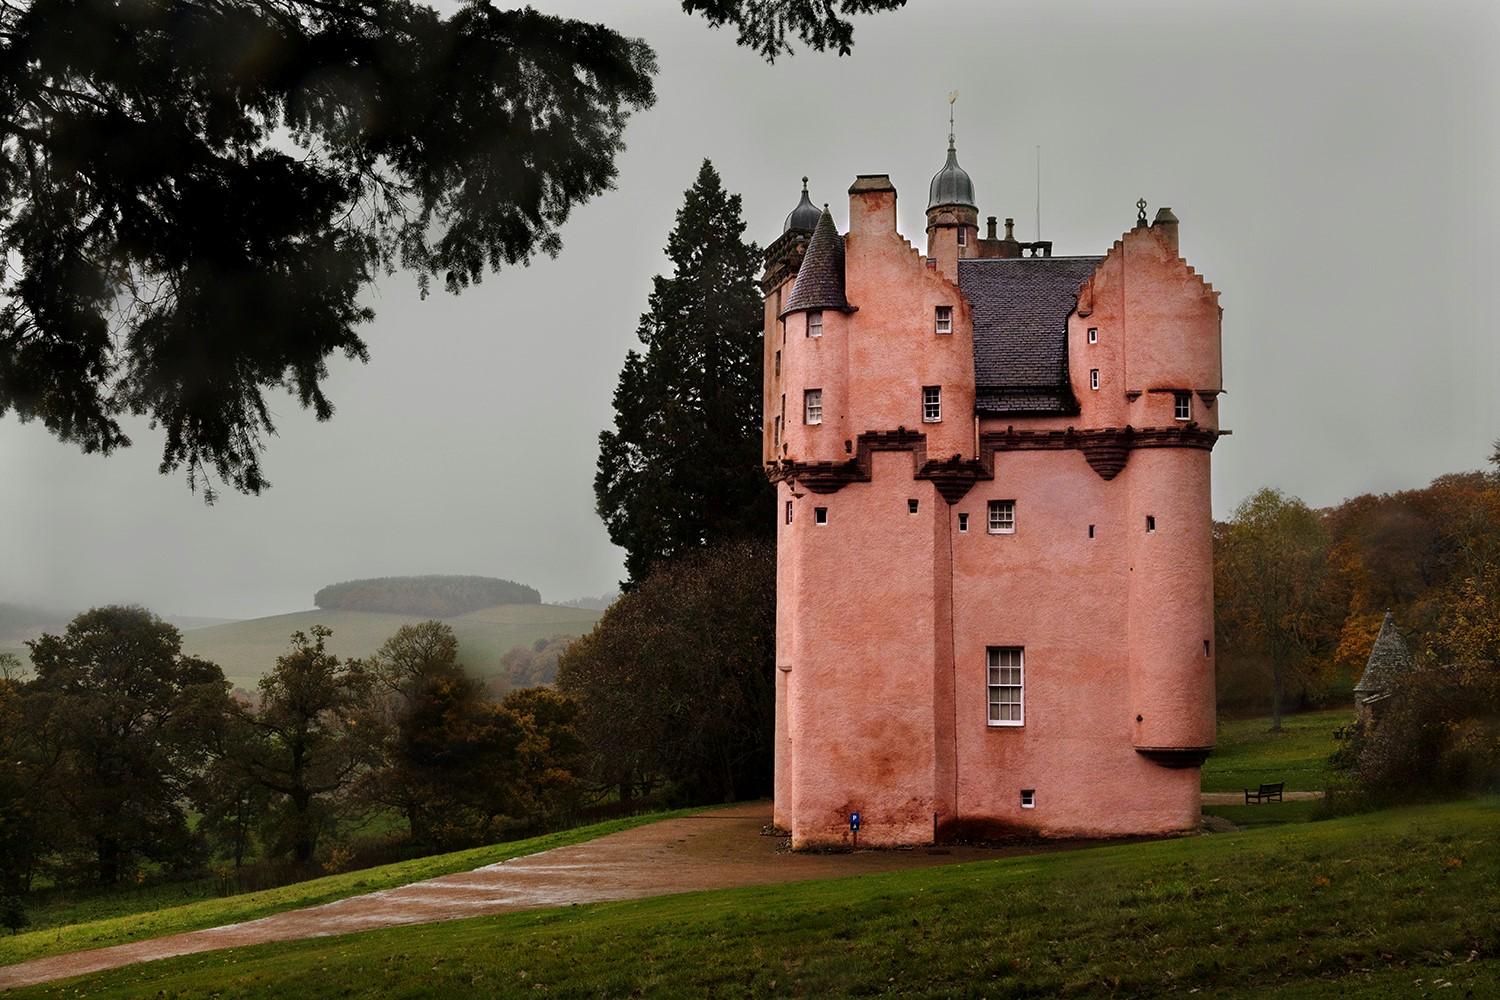 Pink Castle ist eine limitierte Auflage der Fotografie des französischen zeitgenössischen Künstlers Christophe Jacrot. 
Dieses Foto ist Teil der Serie "Wet Scotland", in diesem Bild der Protagonist ist die Burg von Cragievar in Schottland,